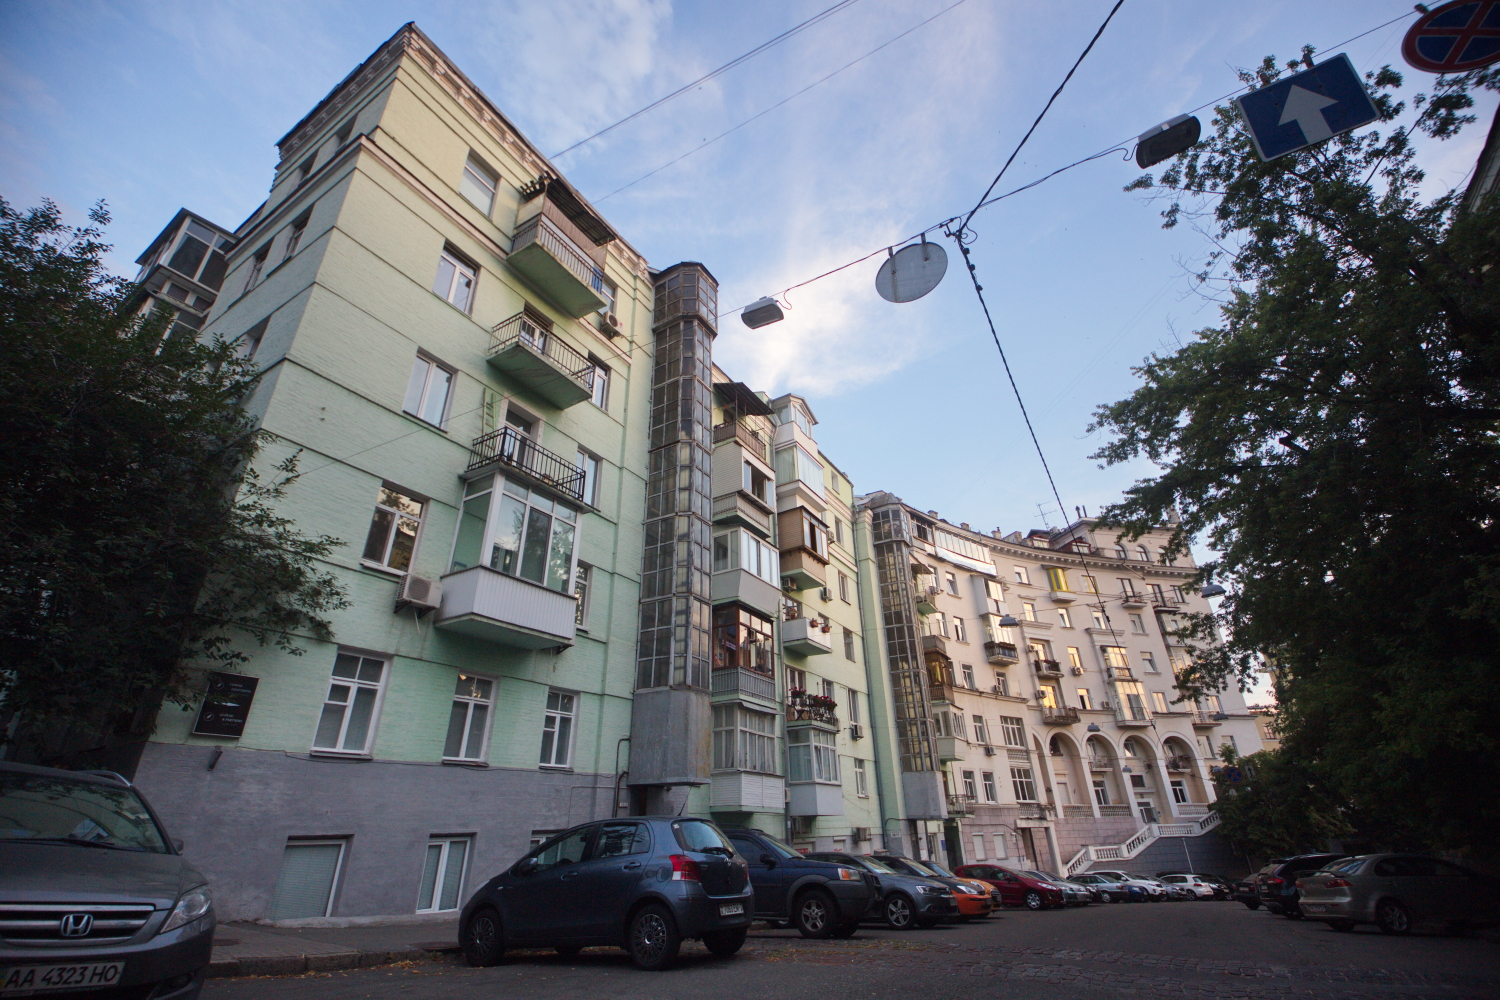 Сам себе экскурсовод: прогулка по Лютеранской улице в Киеве 